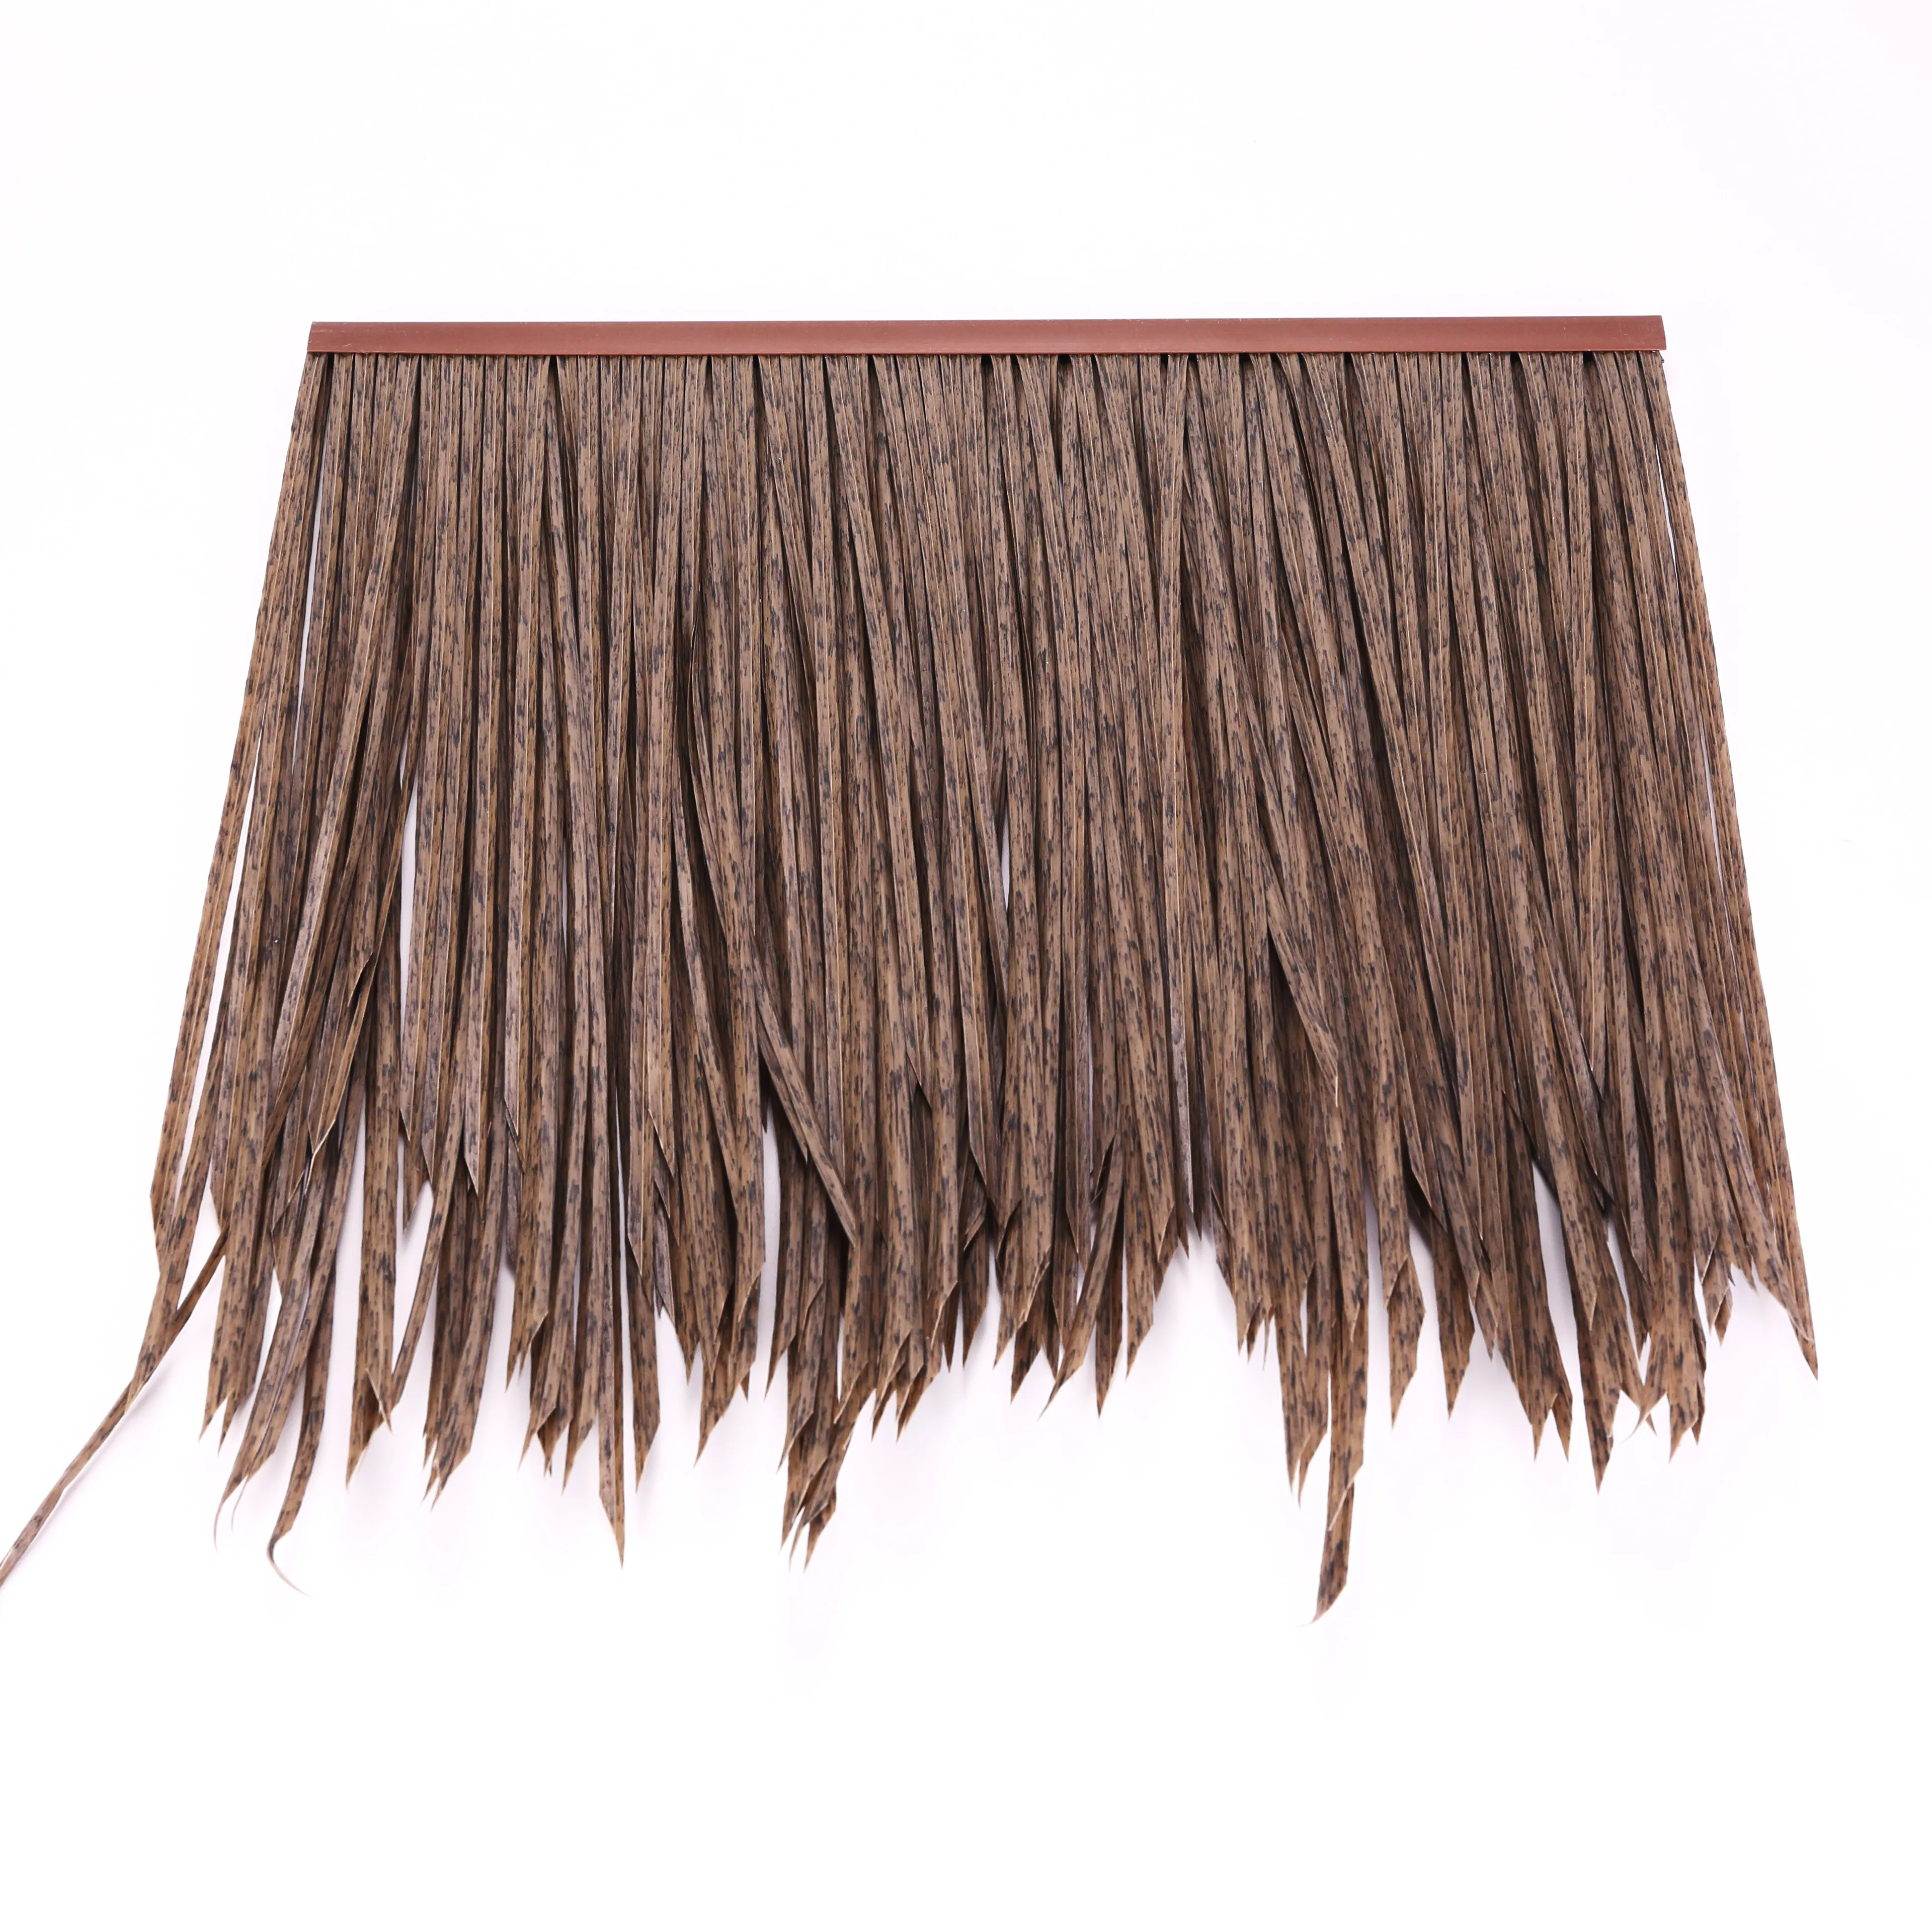 Соломенный тростник без наполнения 30 мм, моно фибриллированный соломенный кровельный материал Kdk Bar